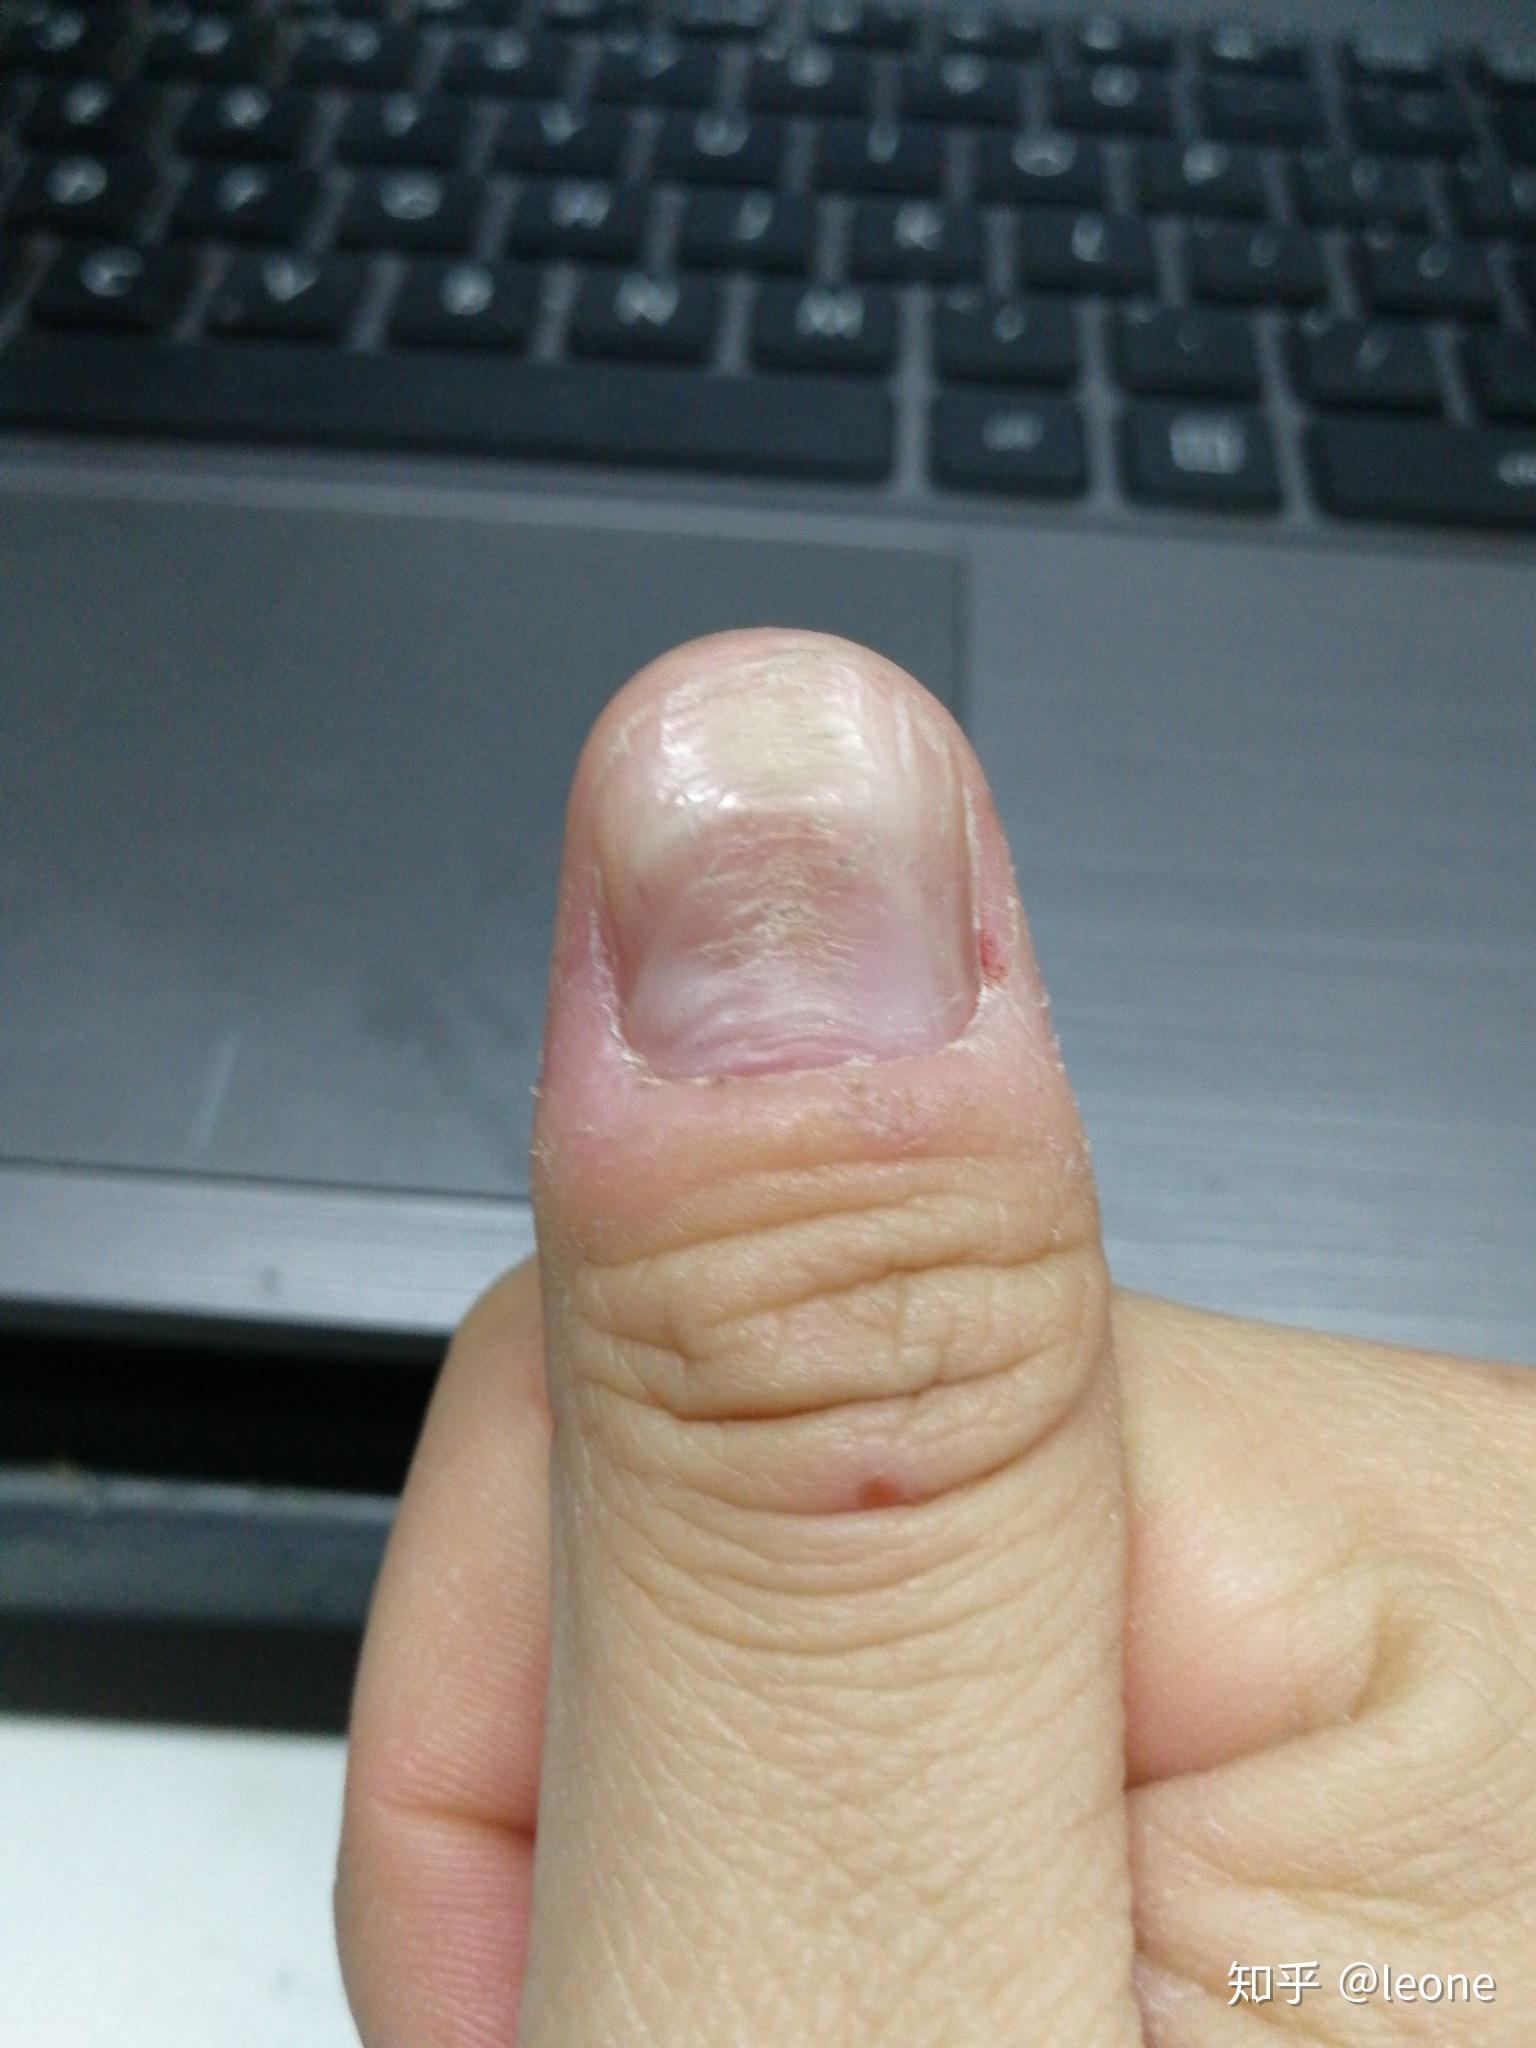 大拇指指甲凹凸不平,有凸起的横纹和凹陷,很多年了也没有其它问题,去